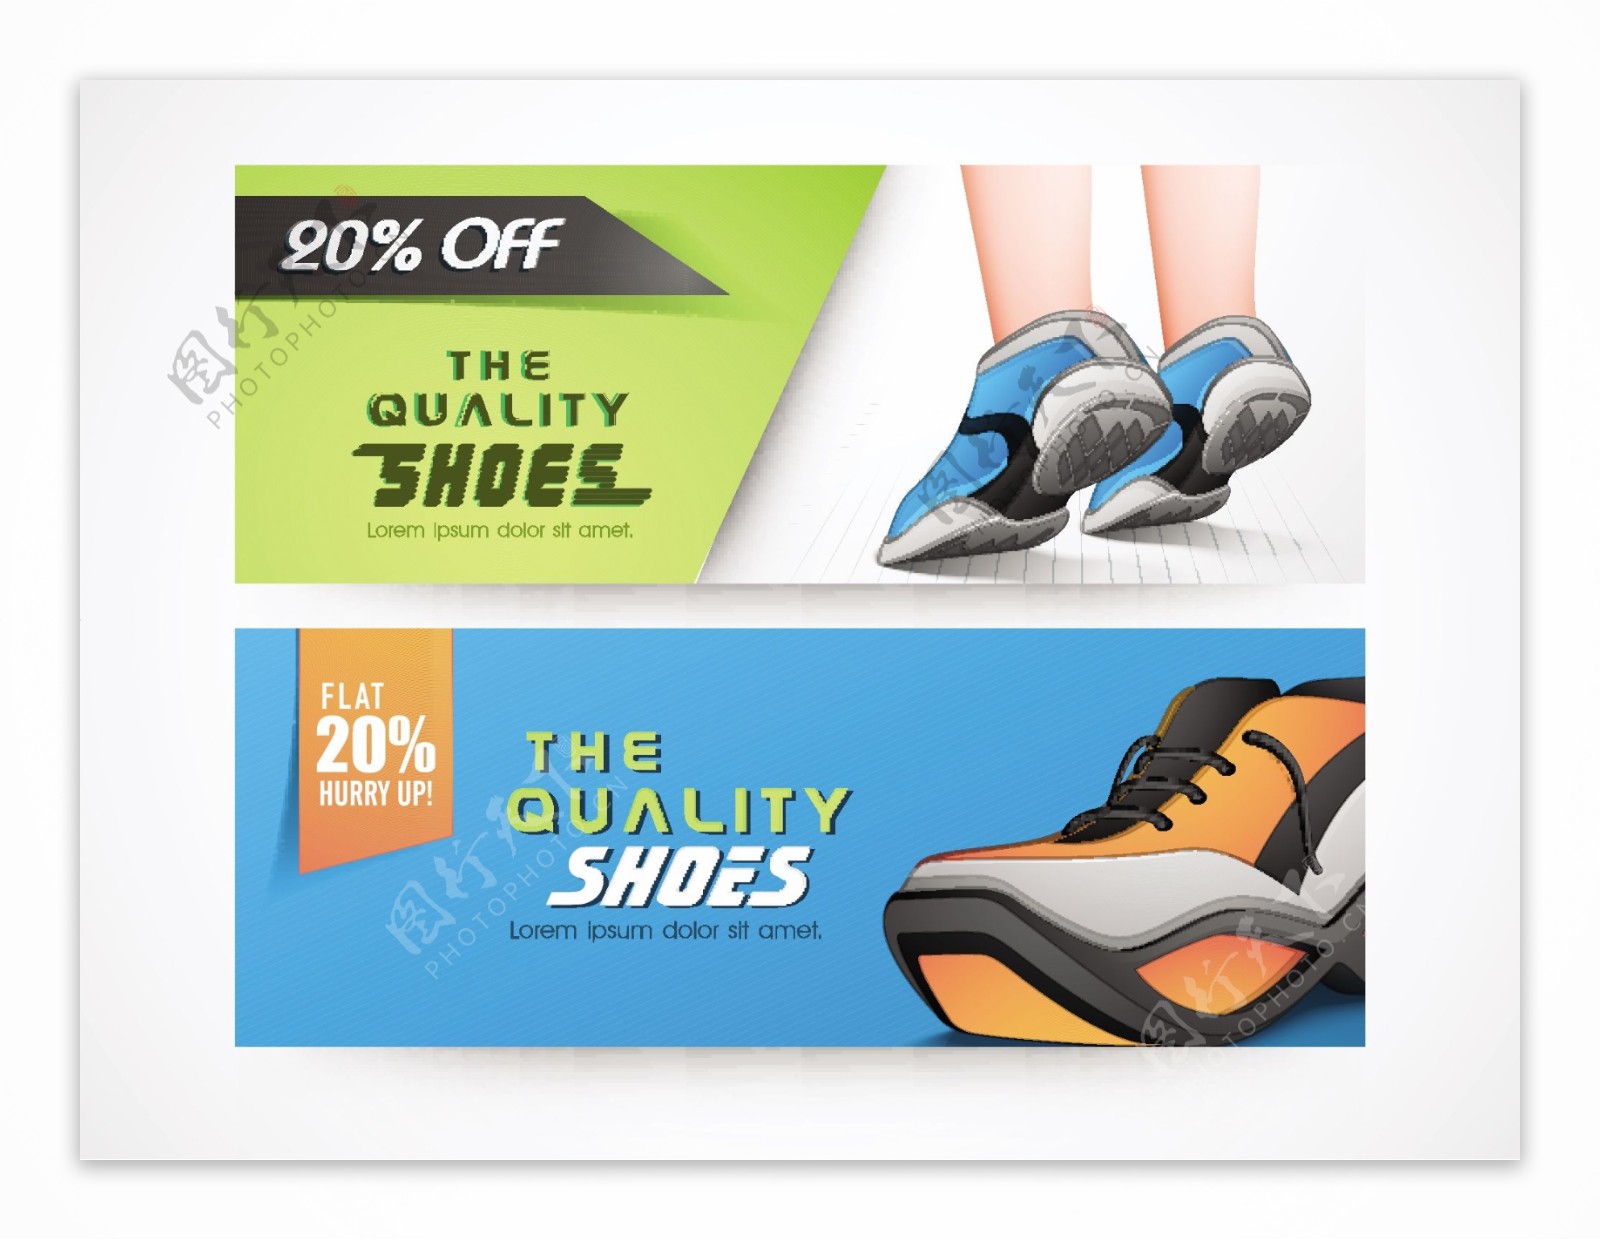 鞋类销售网站标题或横幅设置与时尚鞋插图